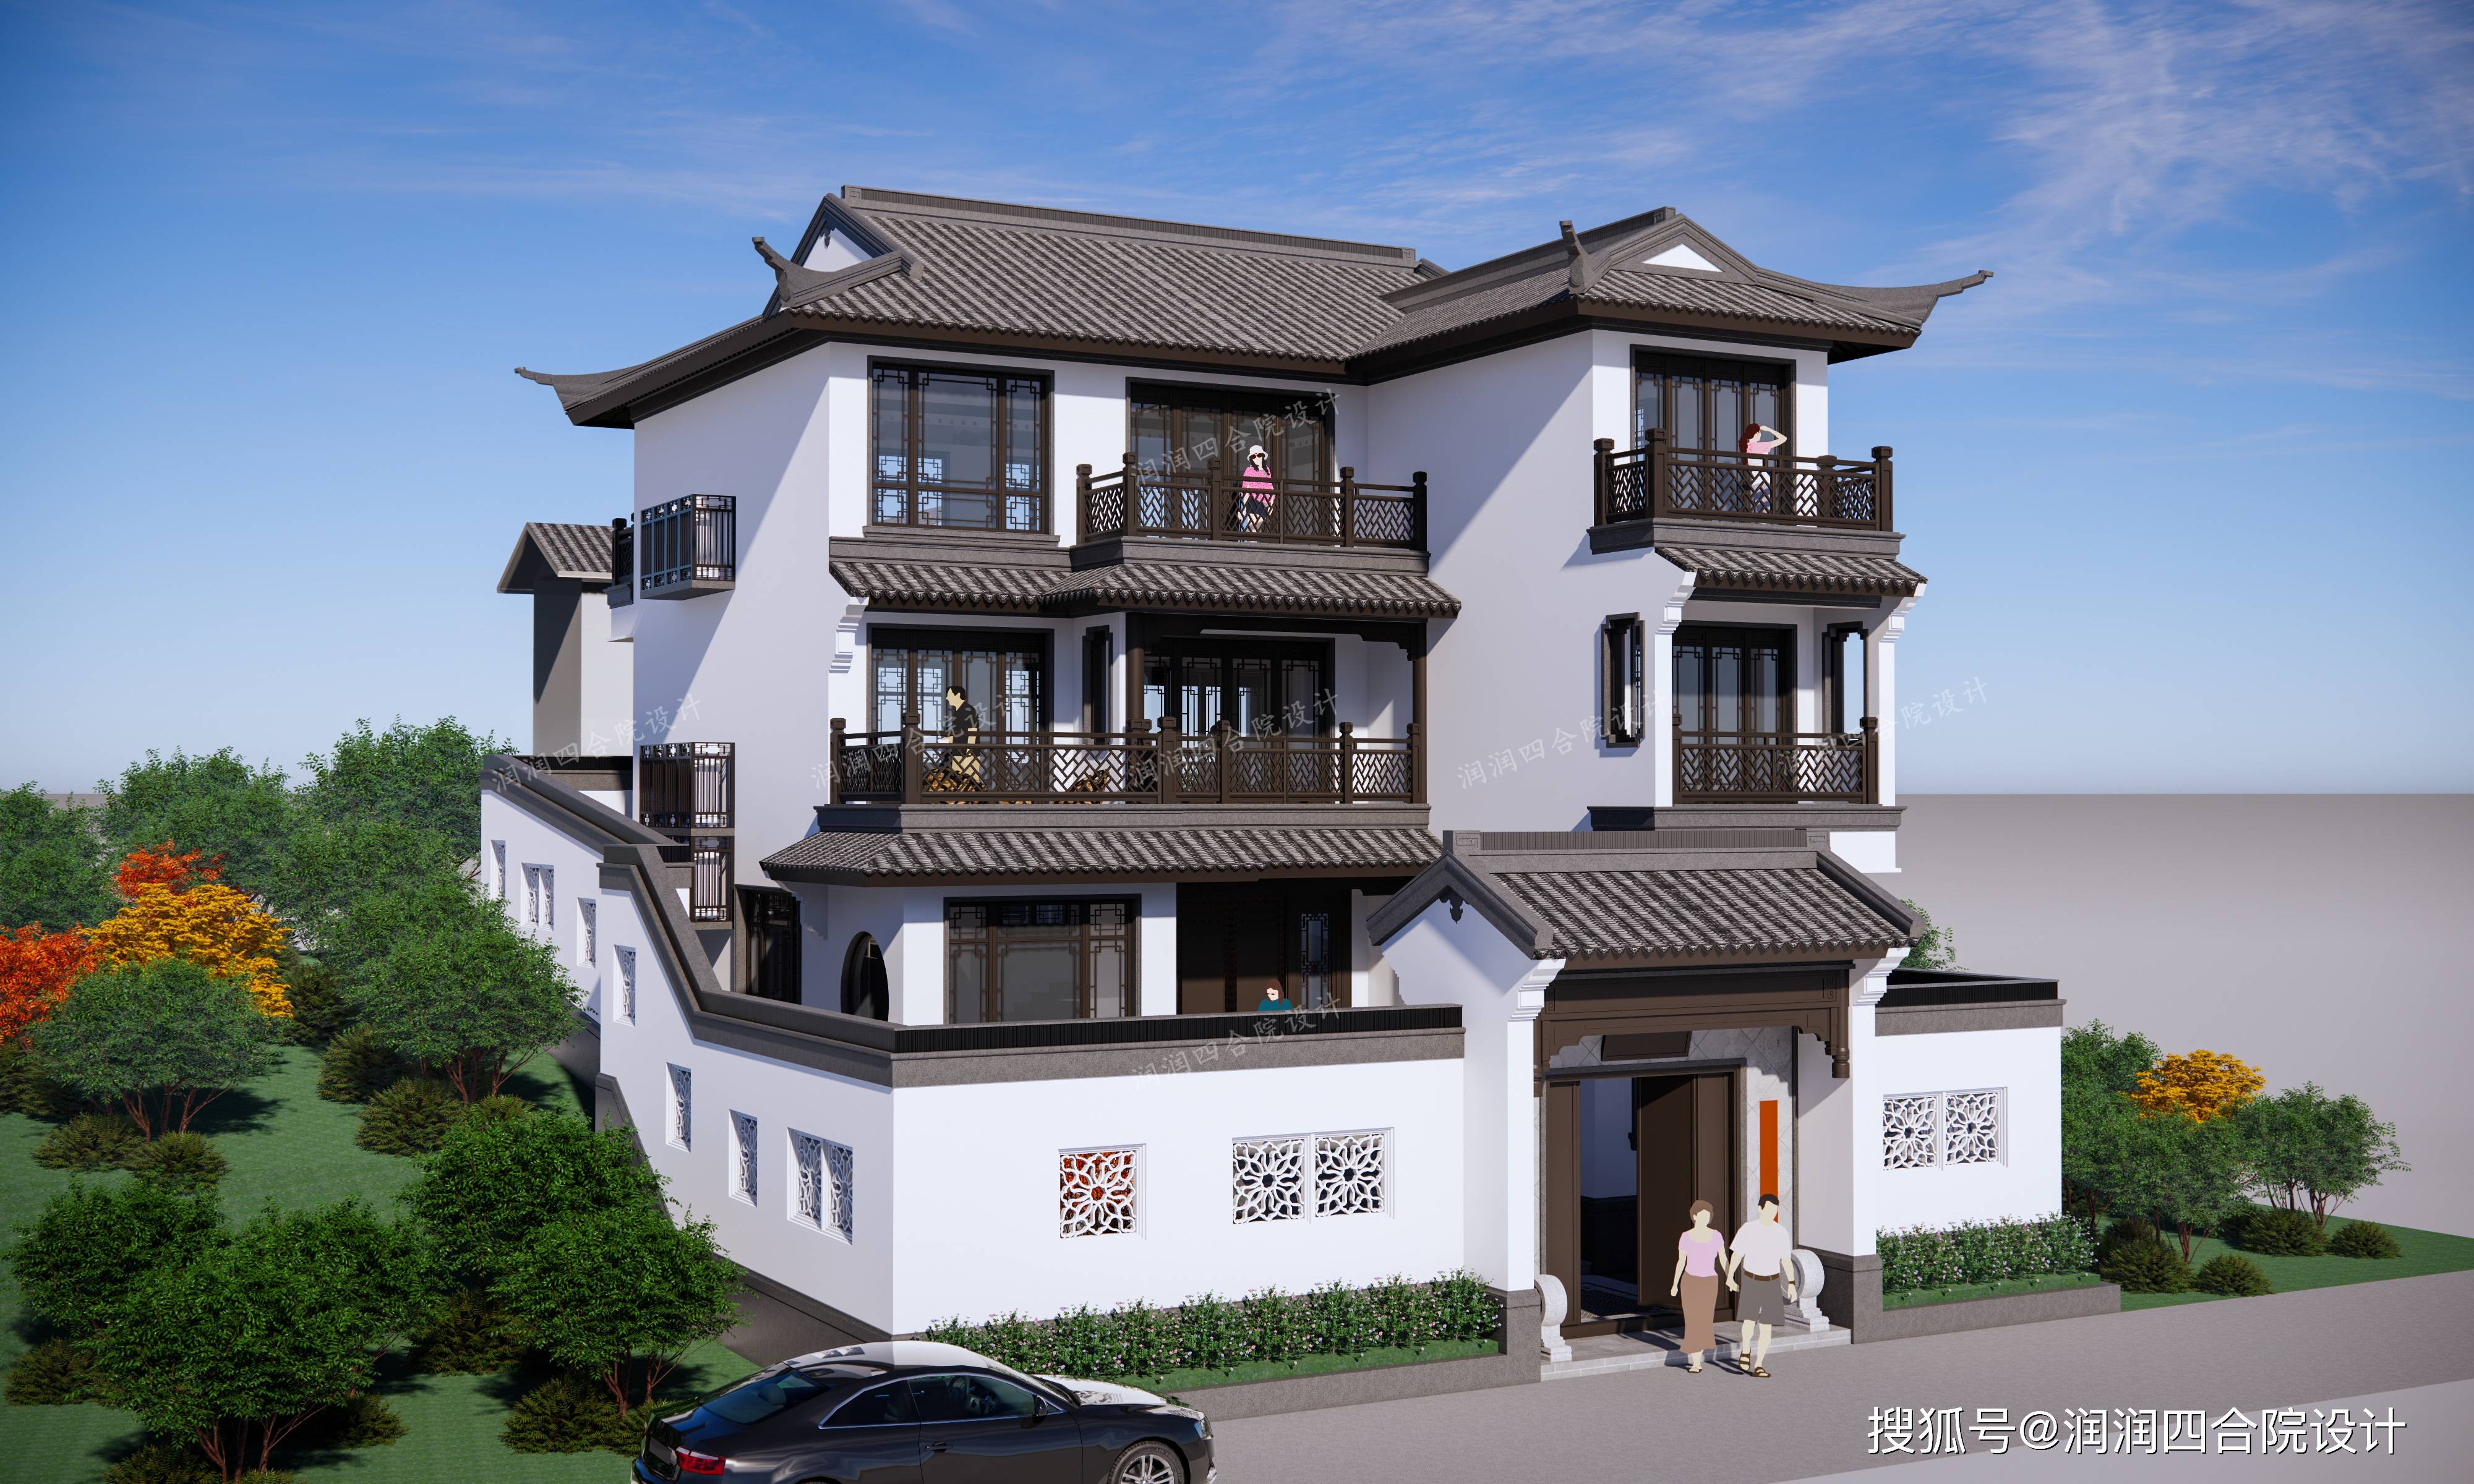 新农村自建房每层120平米的中式独栋别墅润润四合院设计刘鹰